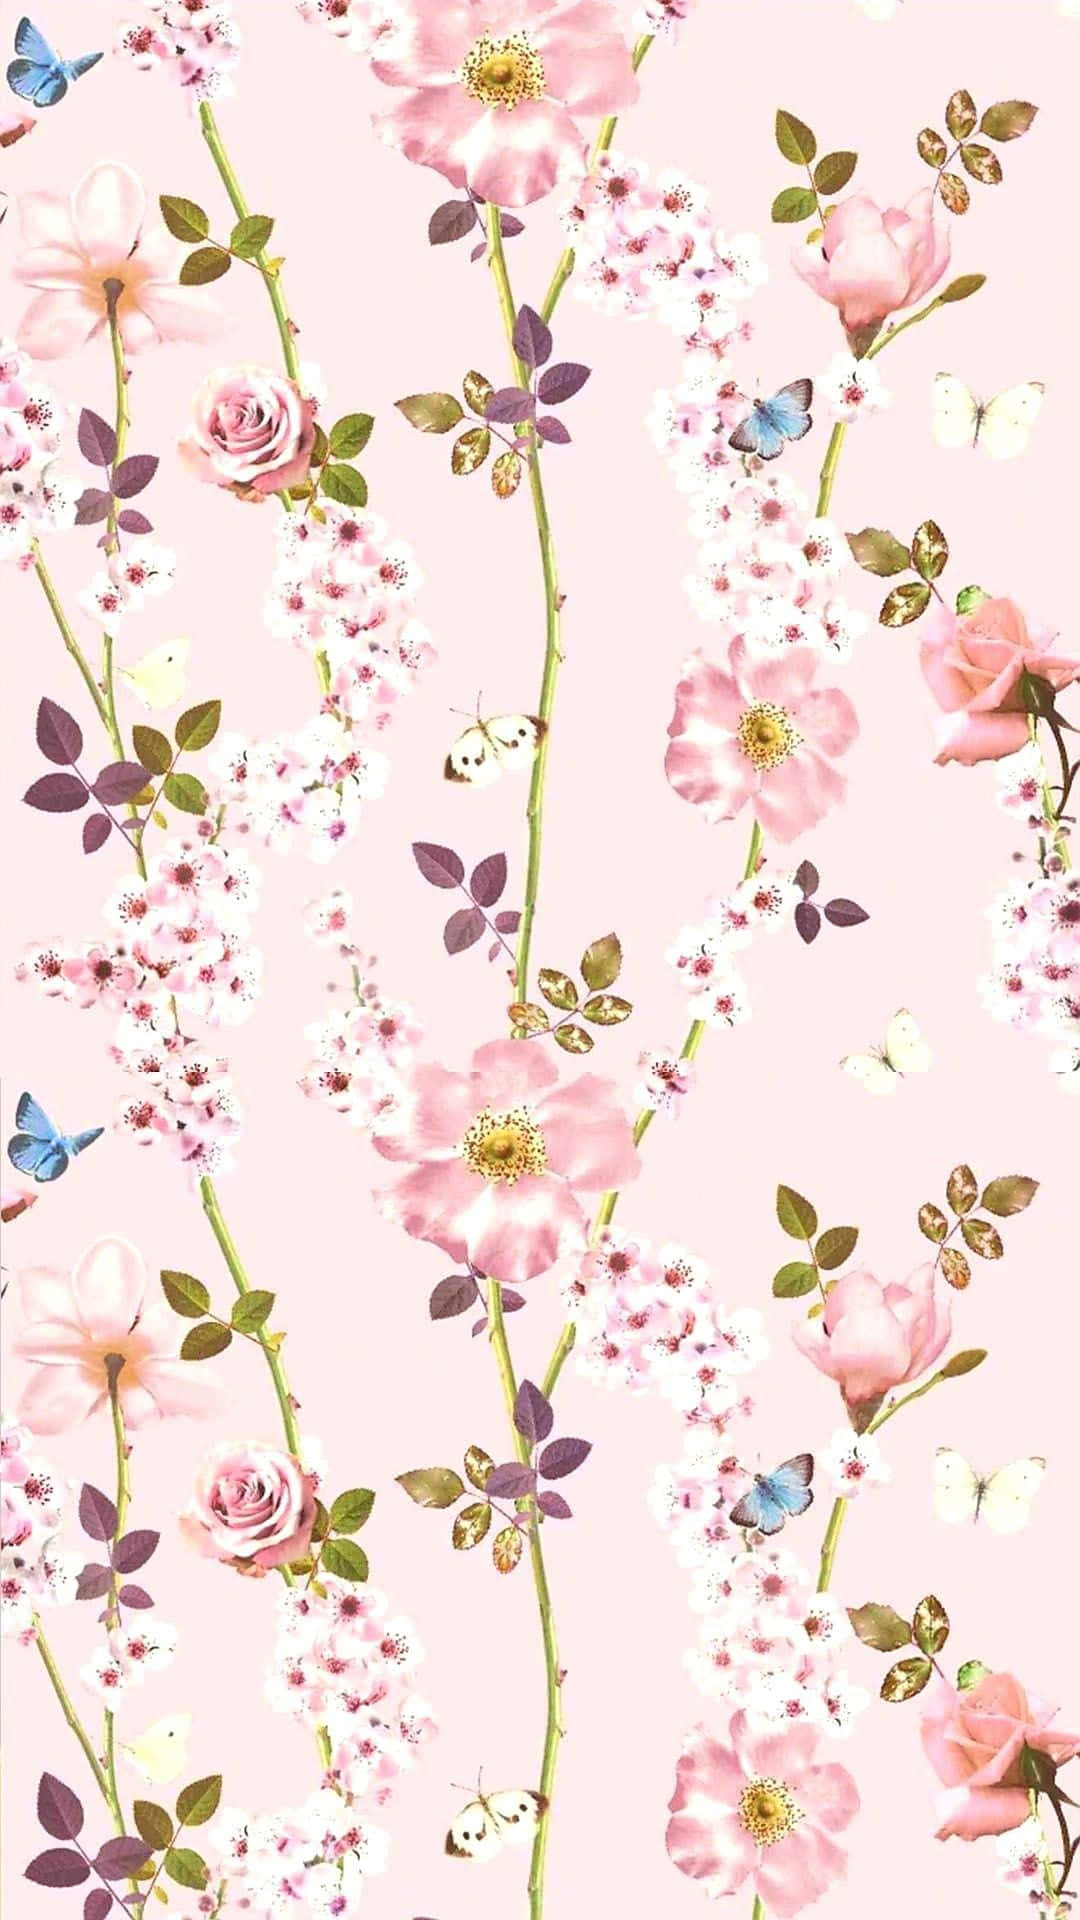 Njutav Den Naturliga Skönheten Hos Rosa Blommor På Din Dator- Eller Mobilskärm. Wallpaper